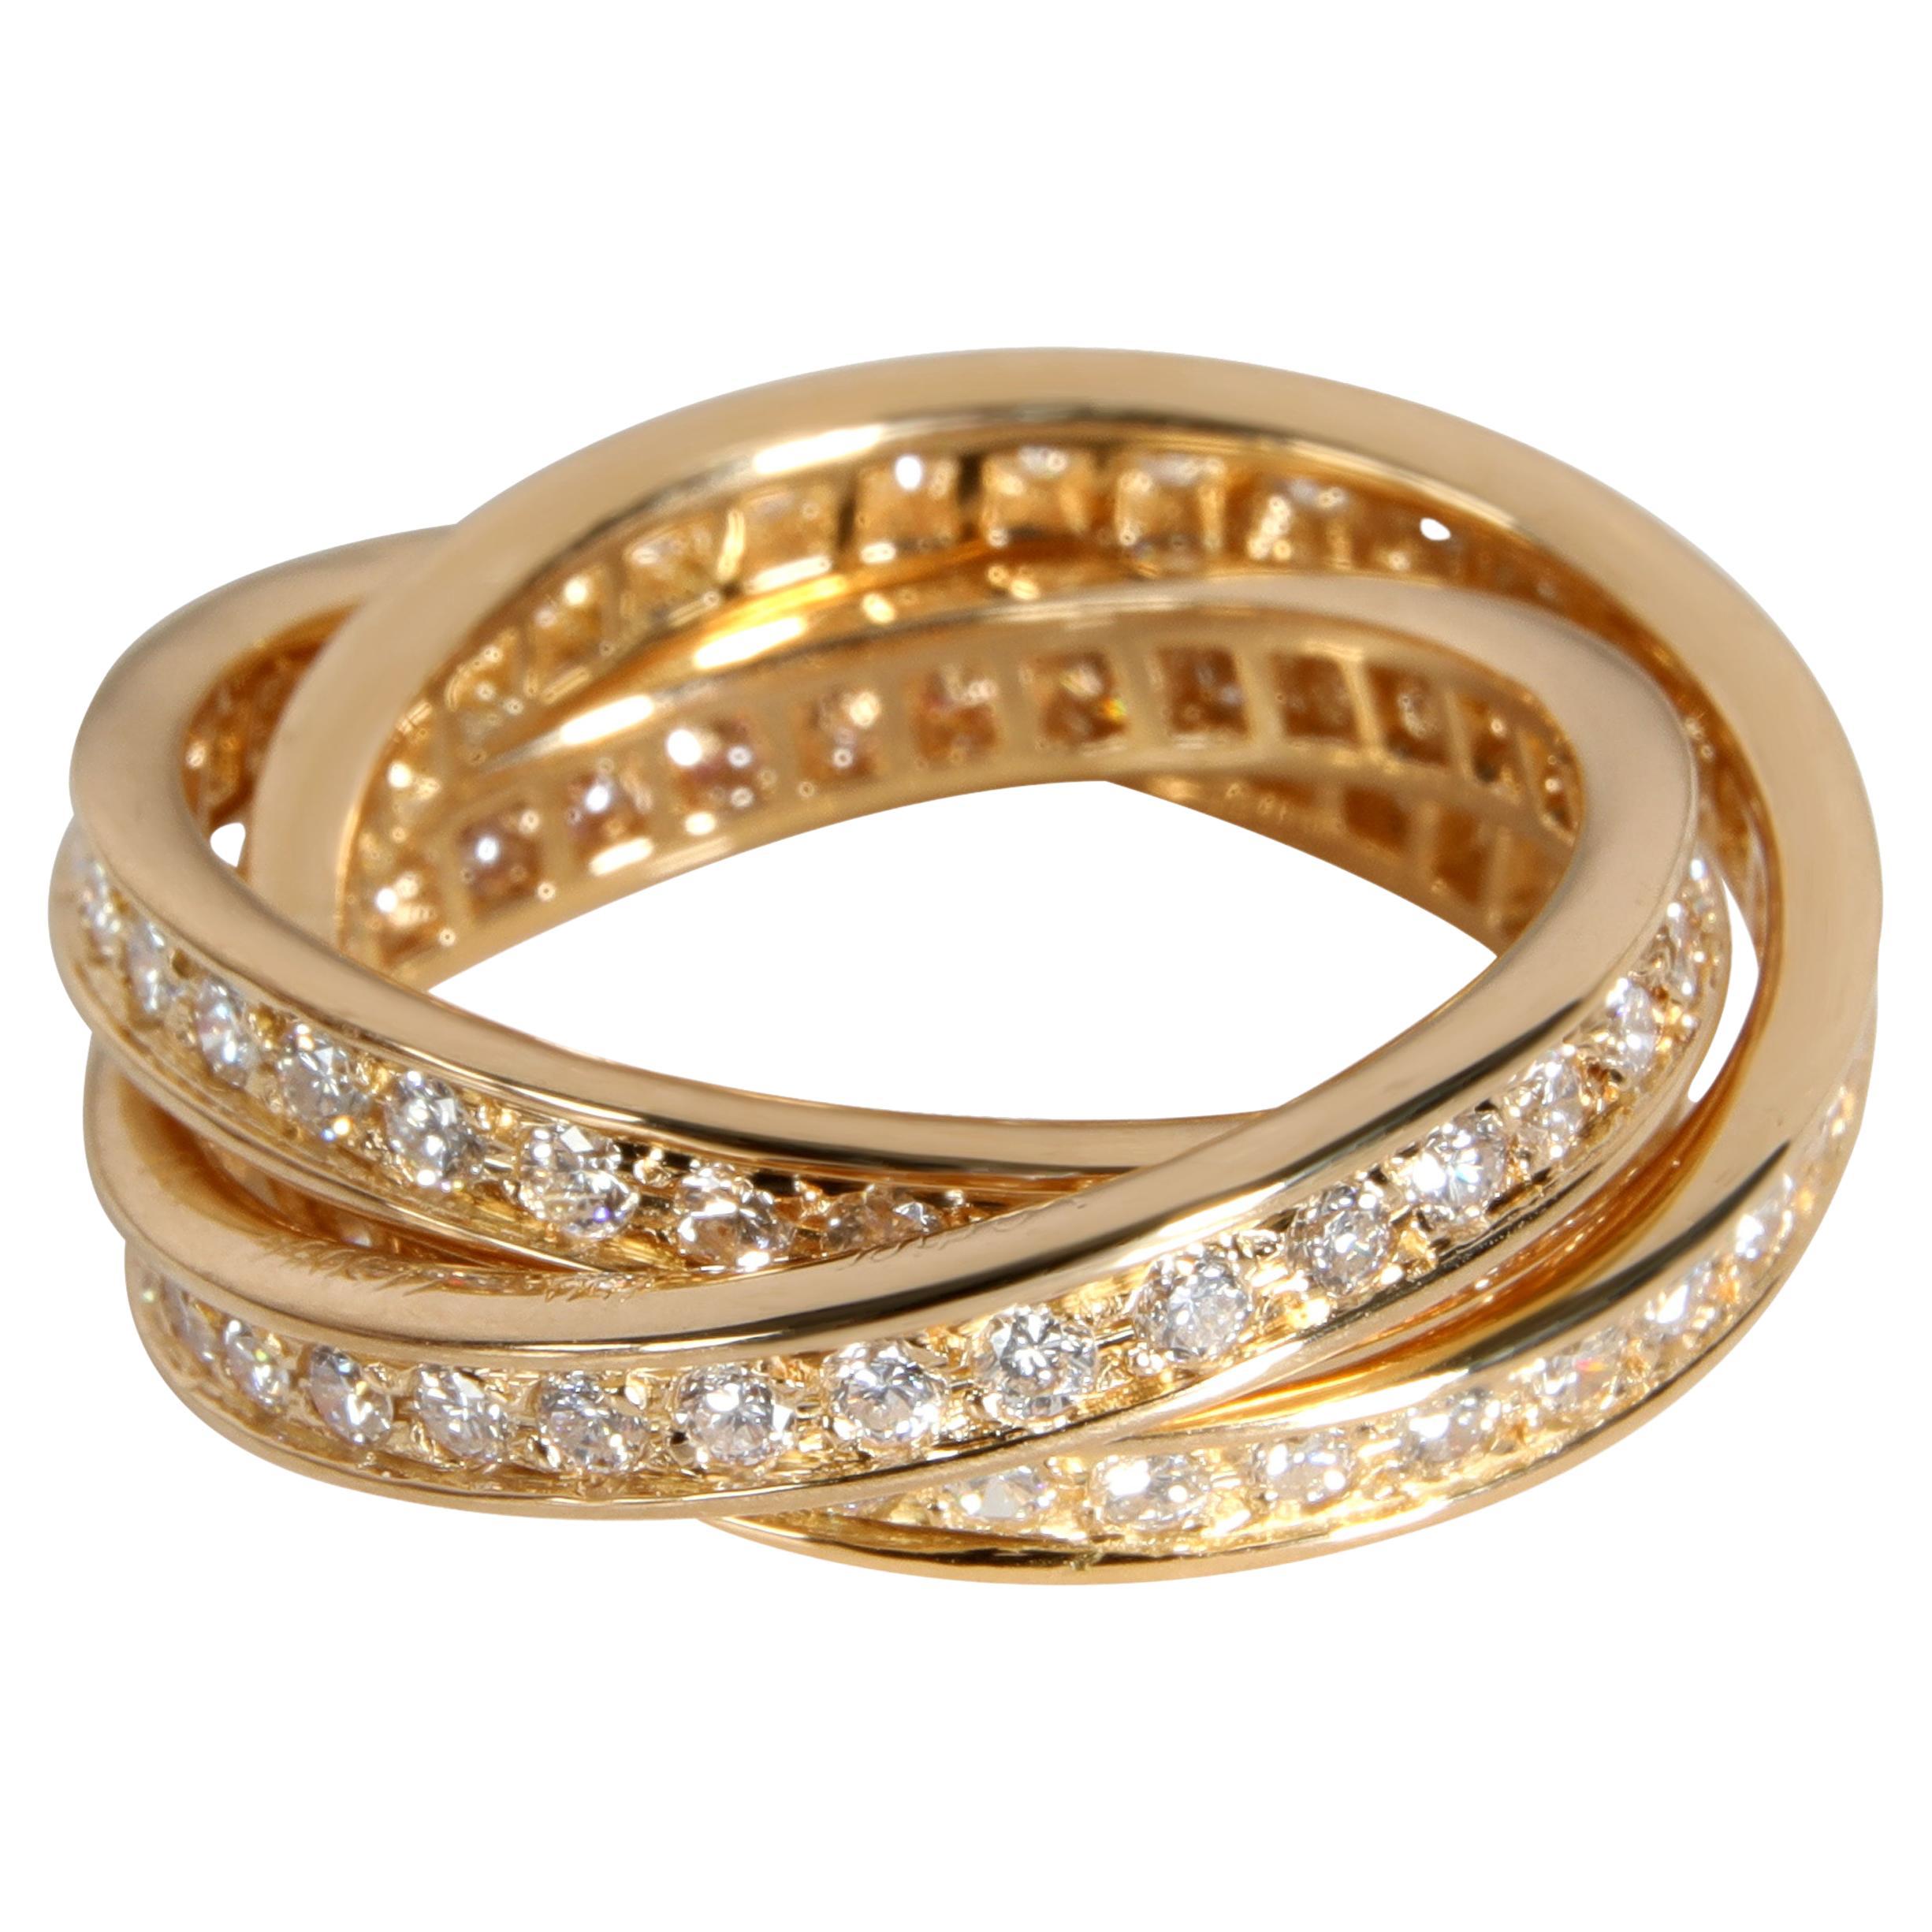 Cartier Bague Trinity en or jaune 18 carats avec diamants 1,5 carat poids total